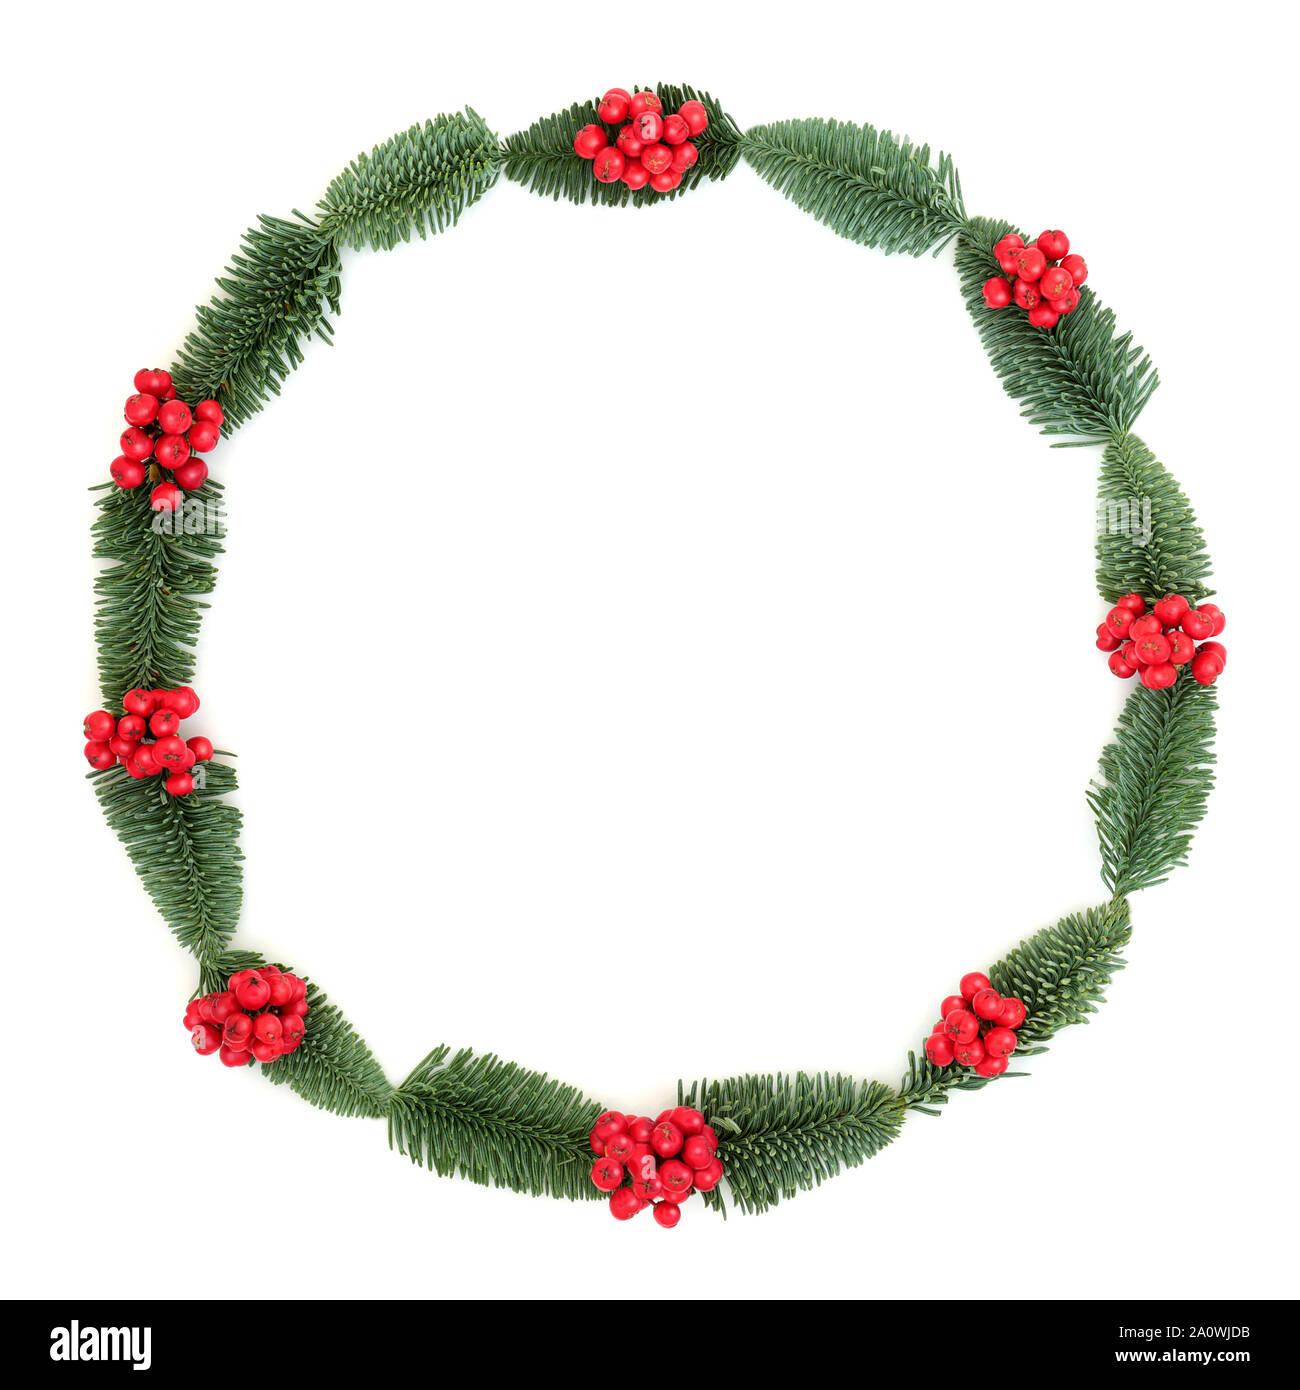 L'hiver et Noël holly et epicea sapin couronne sur fond blanc avec l'exemplaire de l'espace. Symbole traditionnel pour les fêtes. Banque D'Images